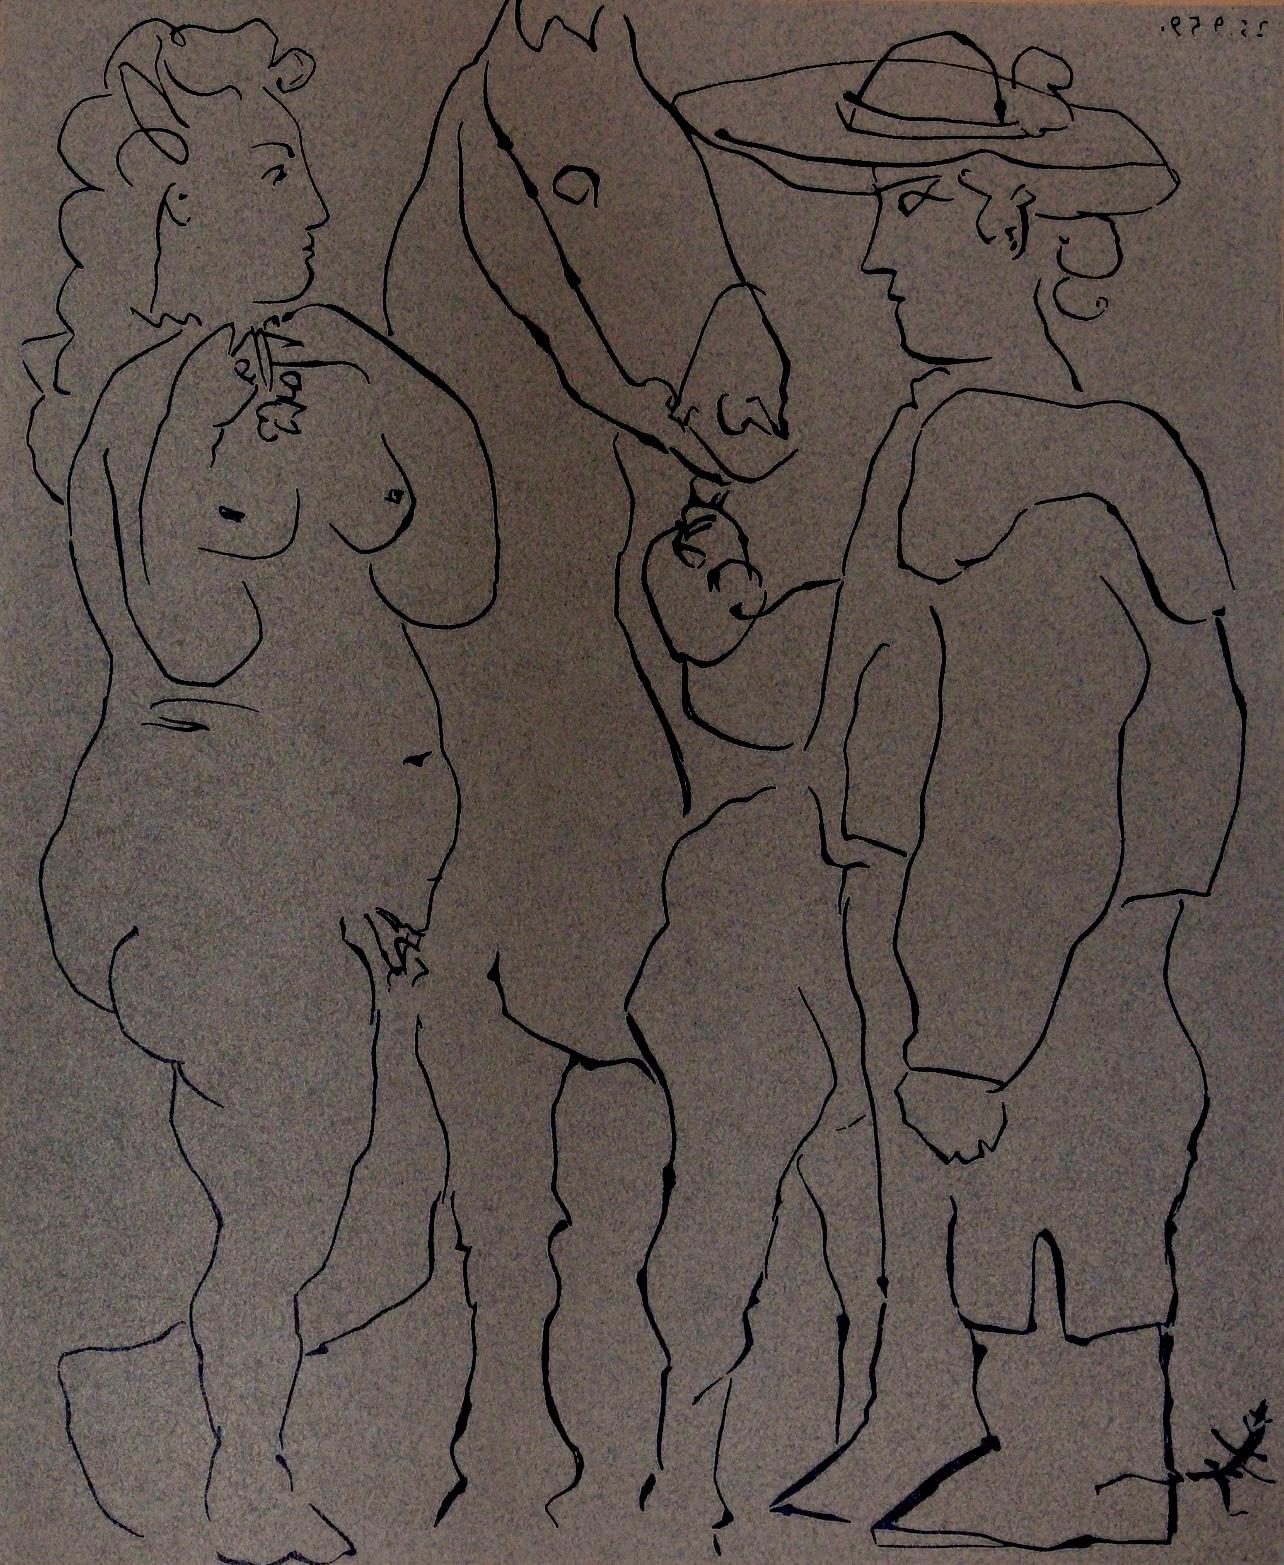 Picasso, Picador, Femme et Cheval, Pablo Picasso-Linogravures (après)